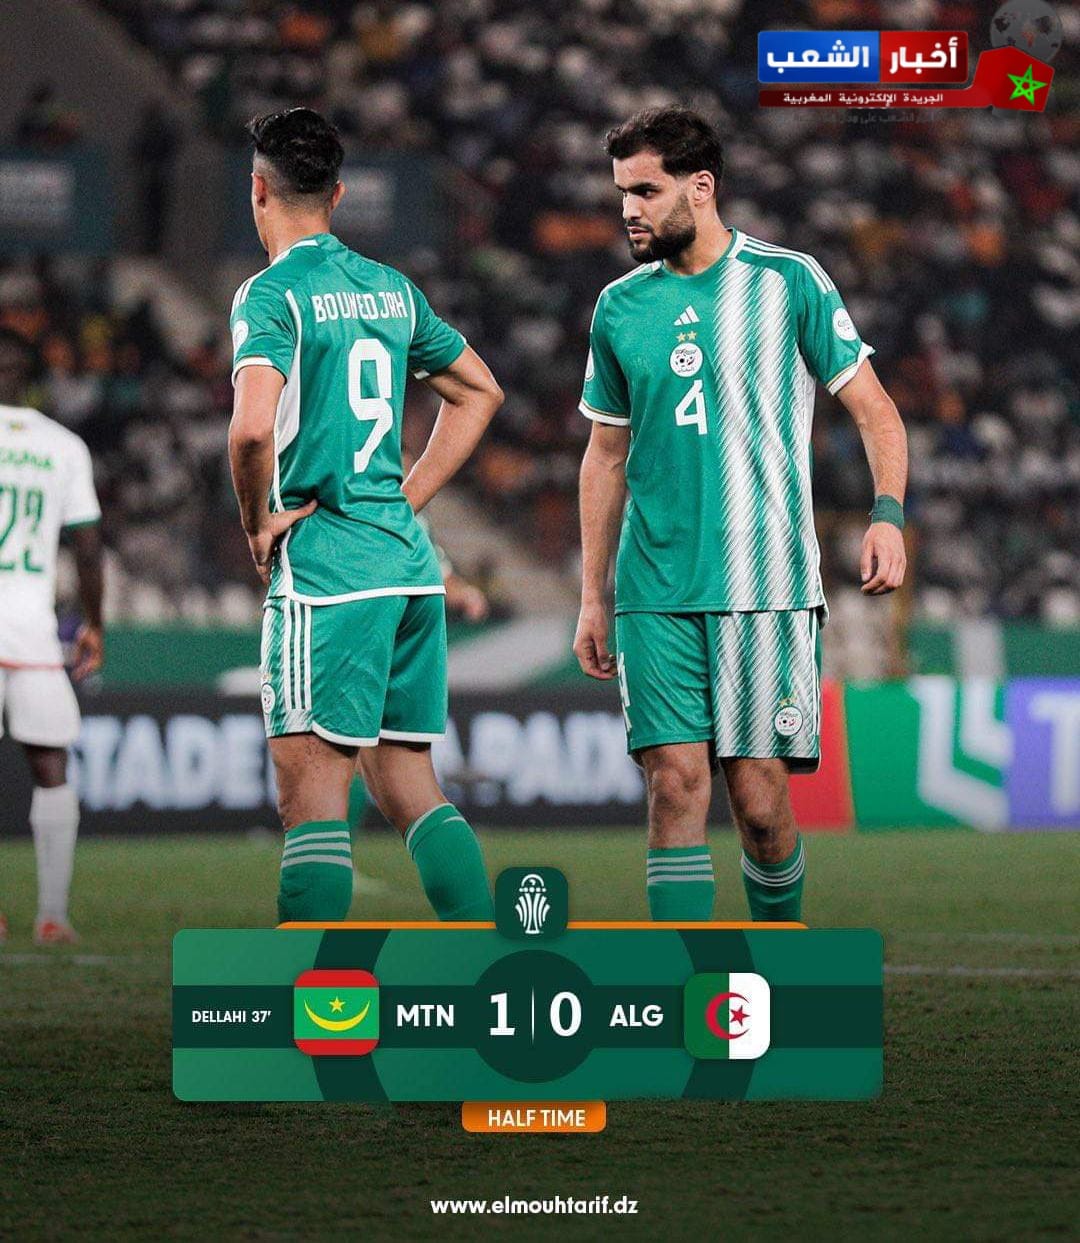 مفاجئة من العيار الثقيل المنتخب الموريتانيا تتأهل بعد إقصاء الجزائر بعد فوزها بهدف لصفر و تعبر لثمن نهائي كأس إفريقيا لأول مرة